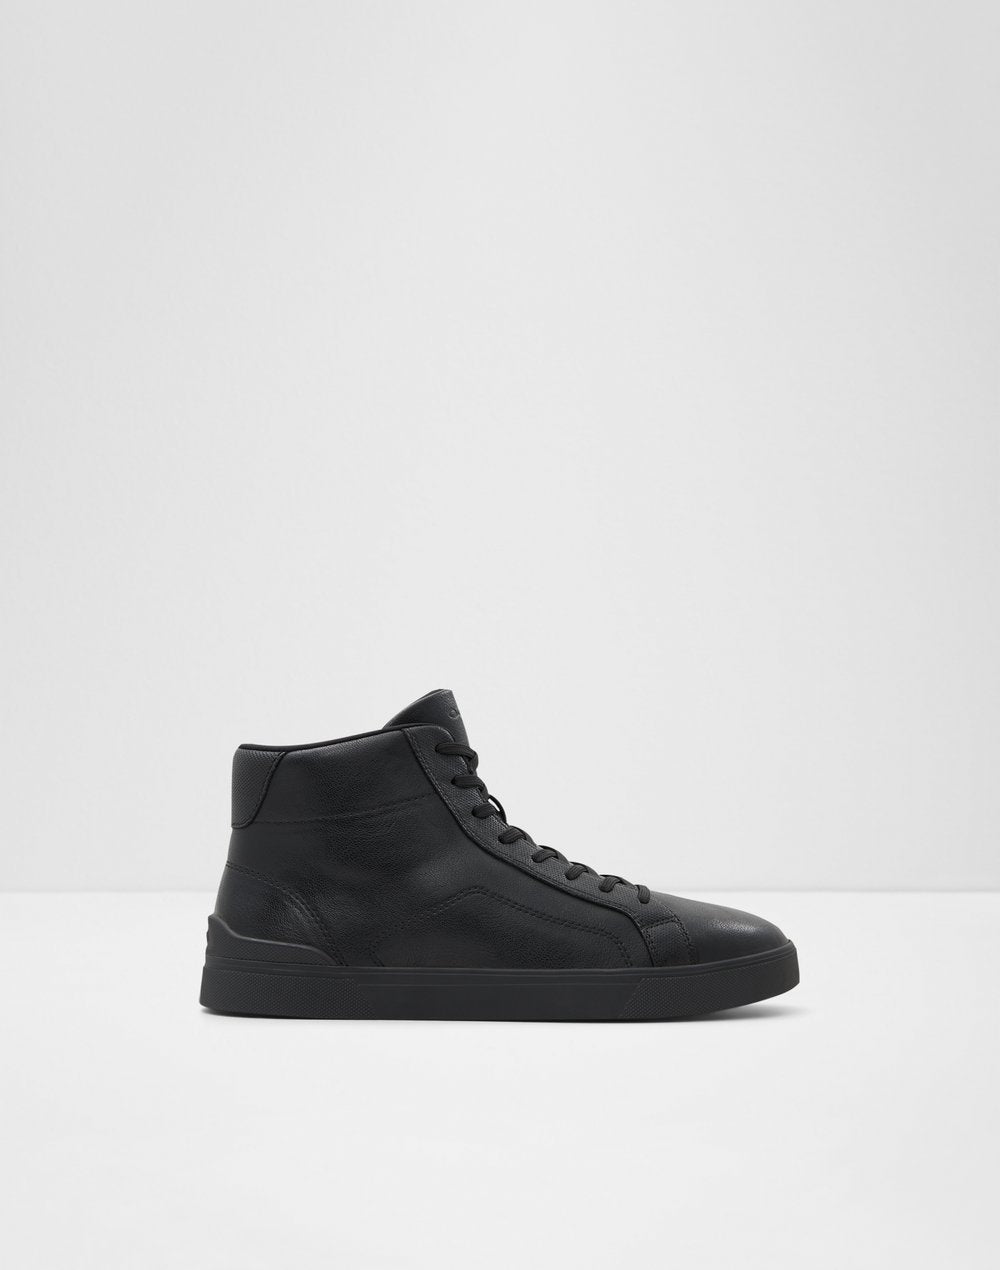 Driraw Men Shoes - Black - ALDO KSA